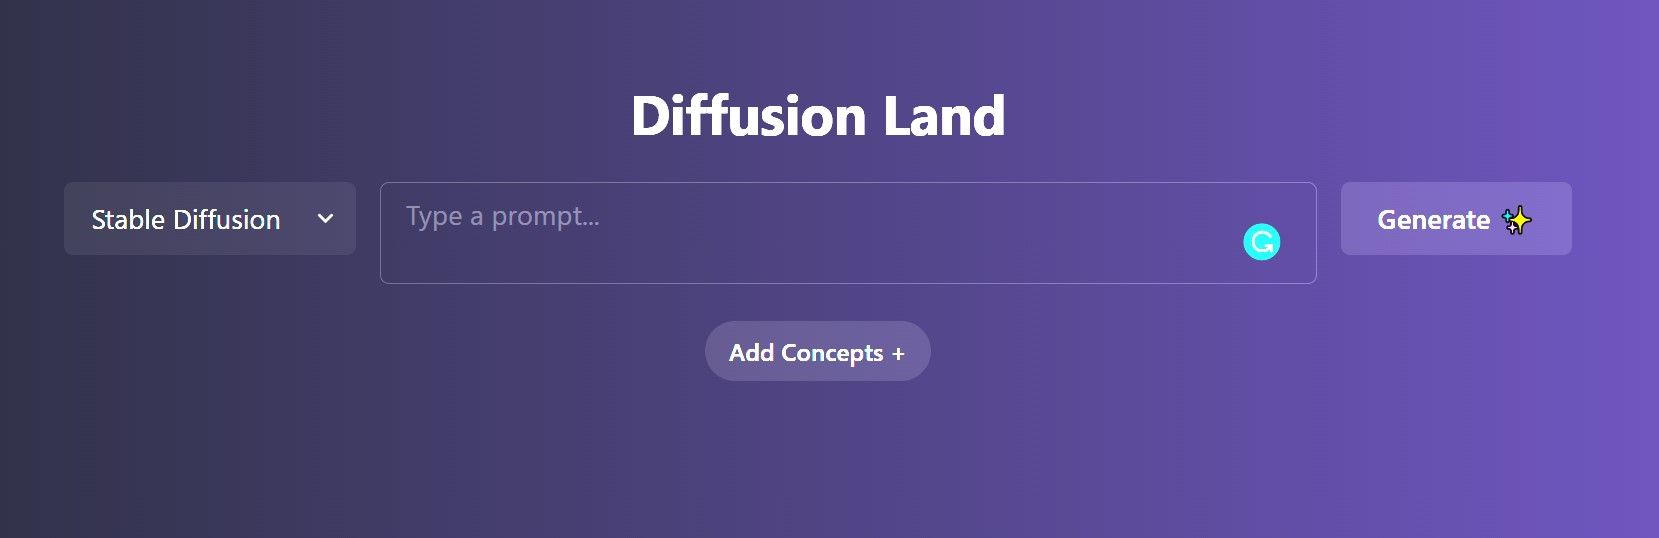 Diffusion Land